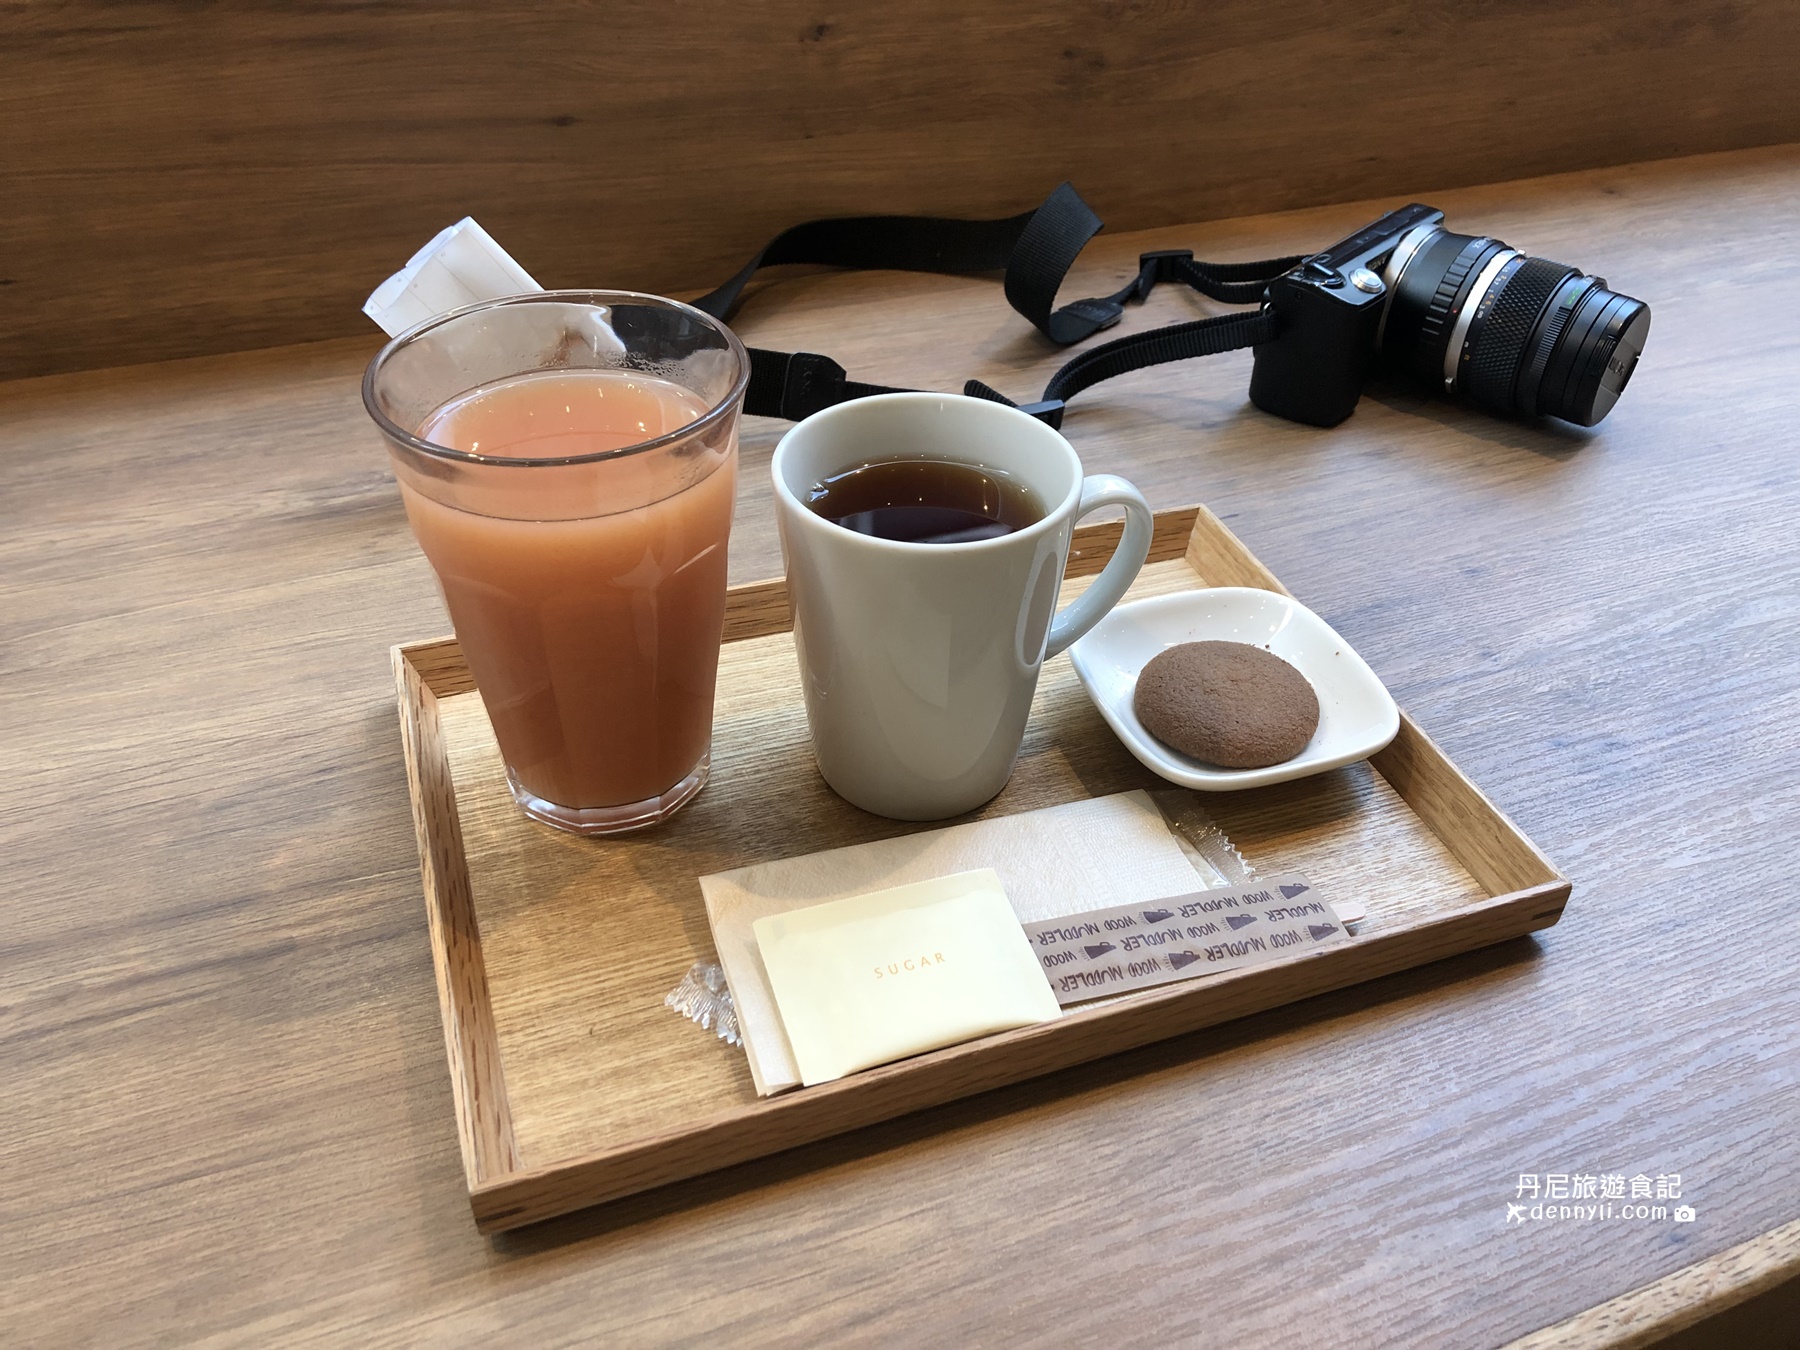 東京銀座SONOKO CAFE早午餐咖啡廳